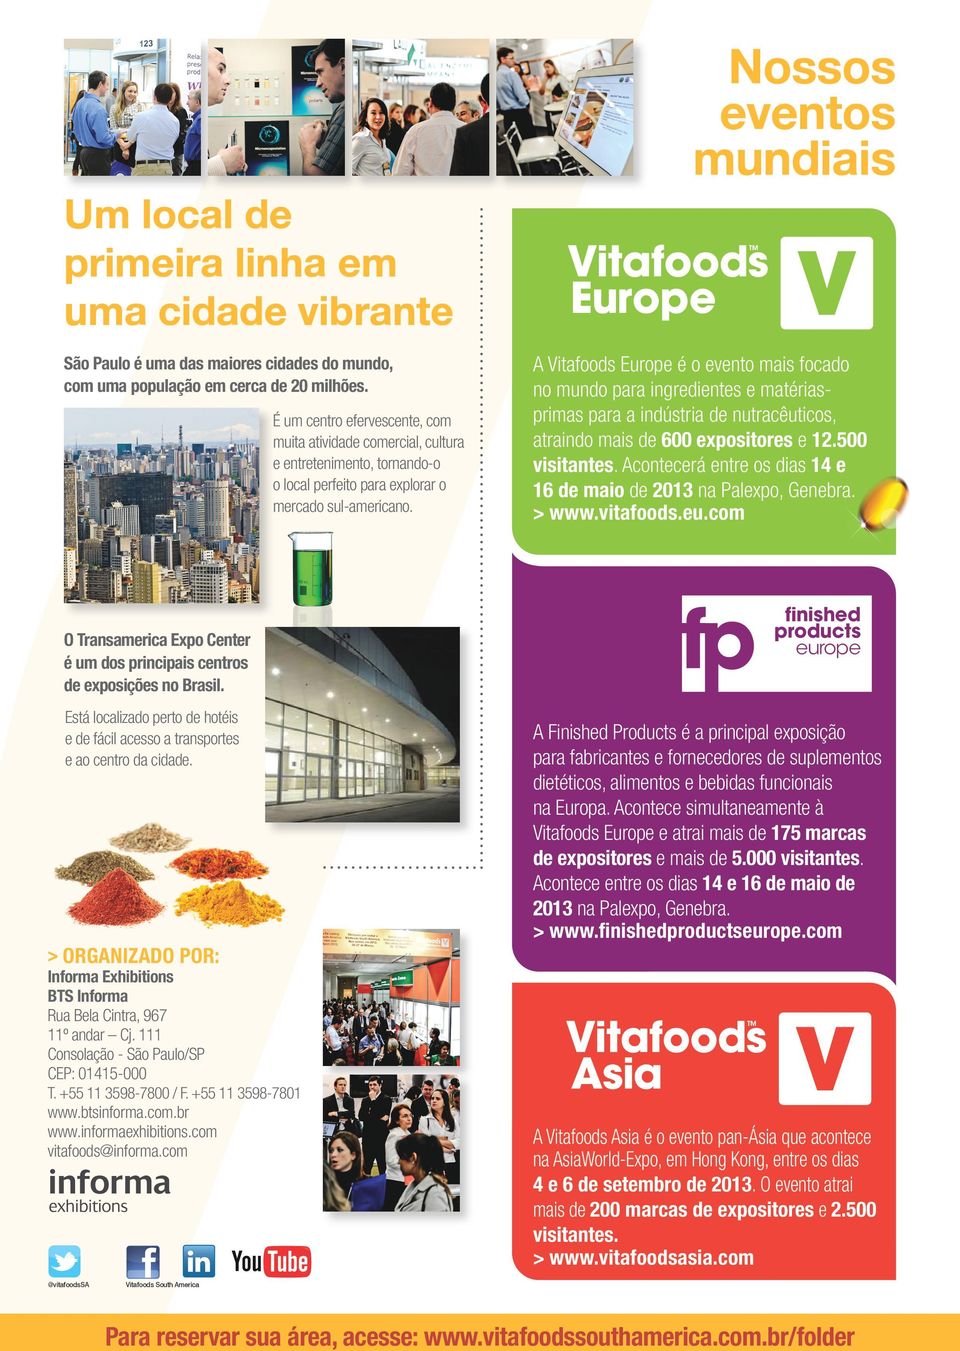 A Vitafoods Europe é o evento mais focado no mundo para ingredientes e matériasprimas para a indústria de nutracêuticos, atraindo mais de 600 expositores e 12.500 visitantes.